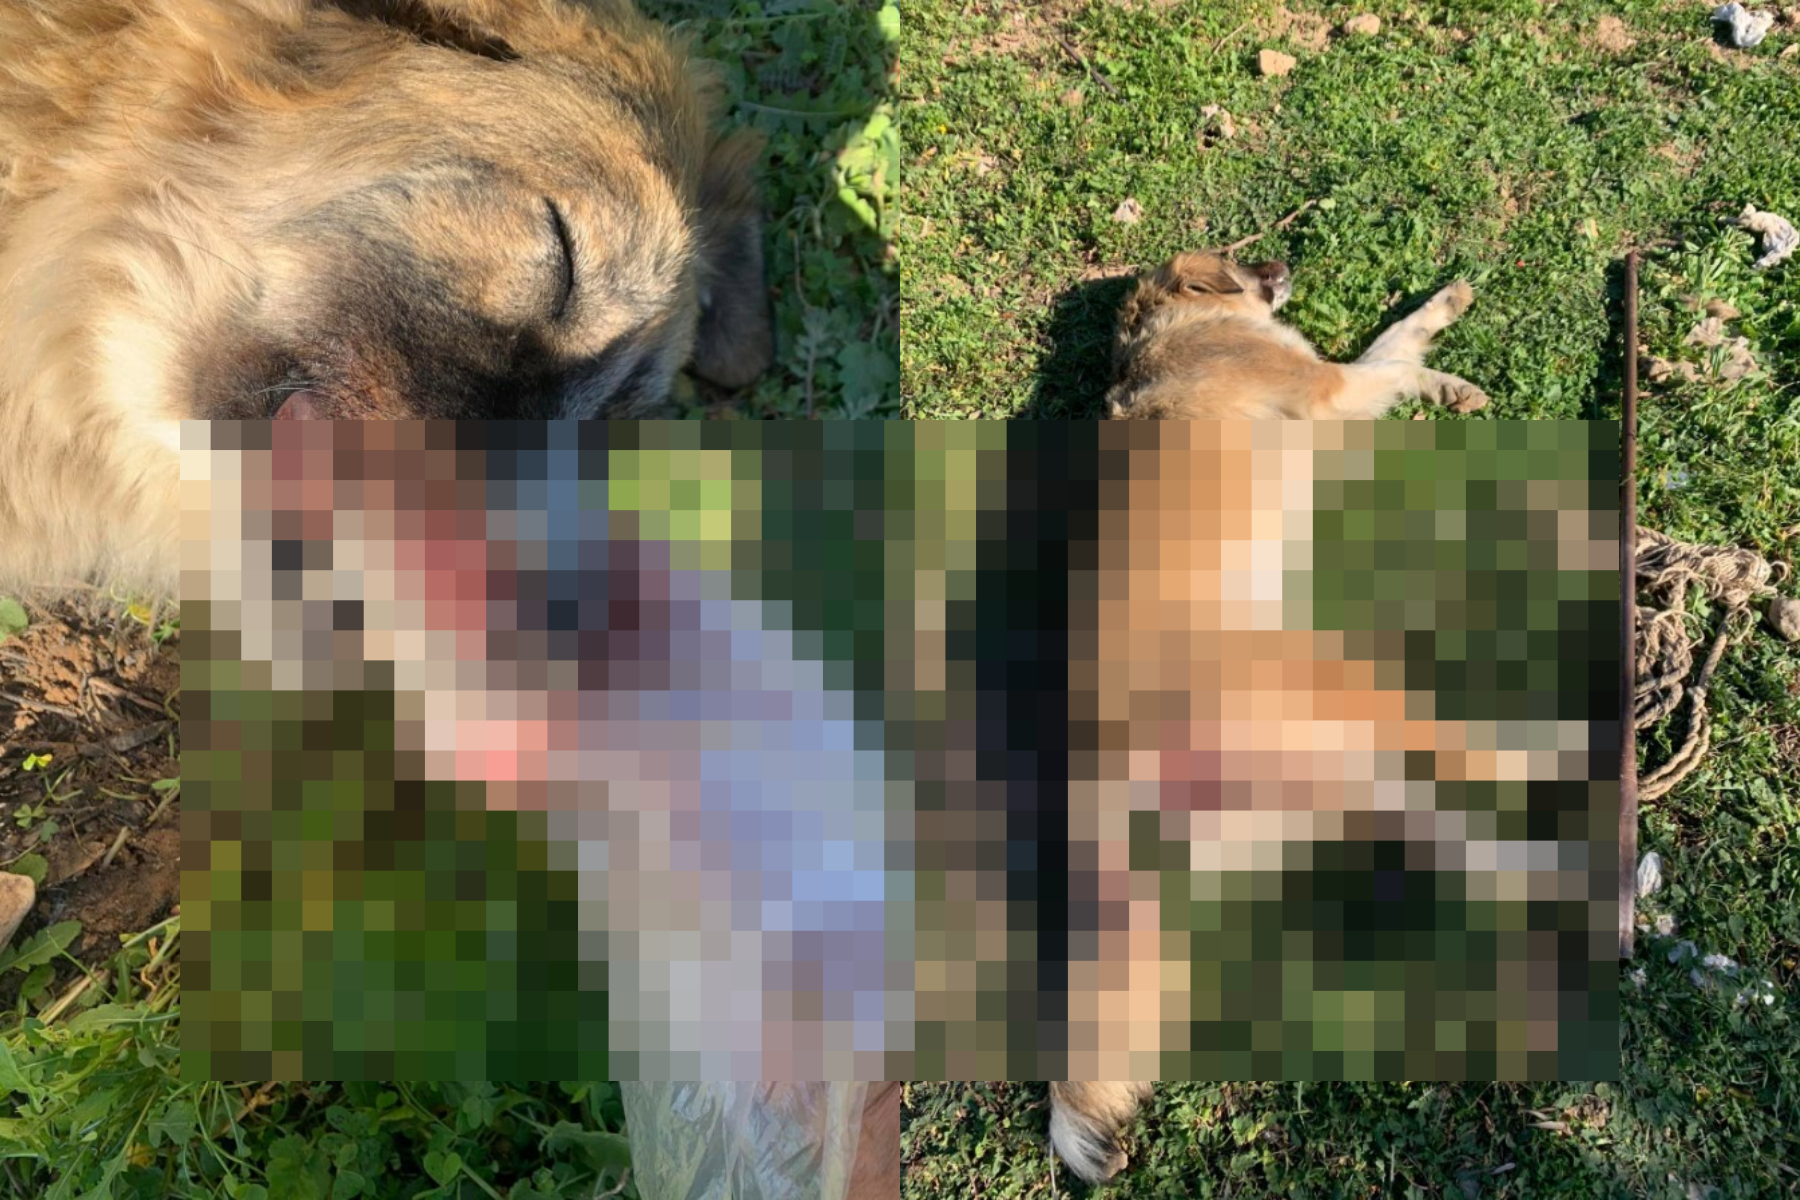 Μέγαρα: Εισαγγελική παρέμβαση για την κακοποίηση και δολοφονία αδέσποτης σκυλίτσας